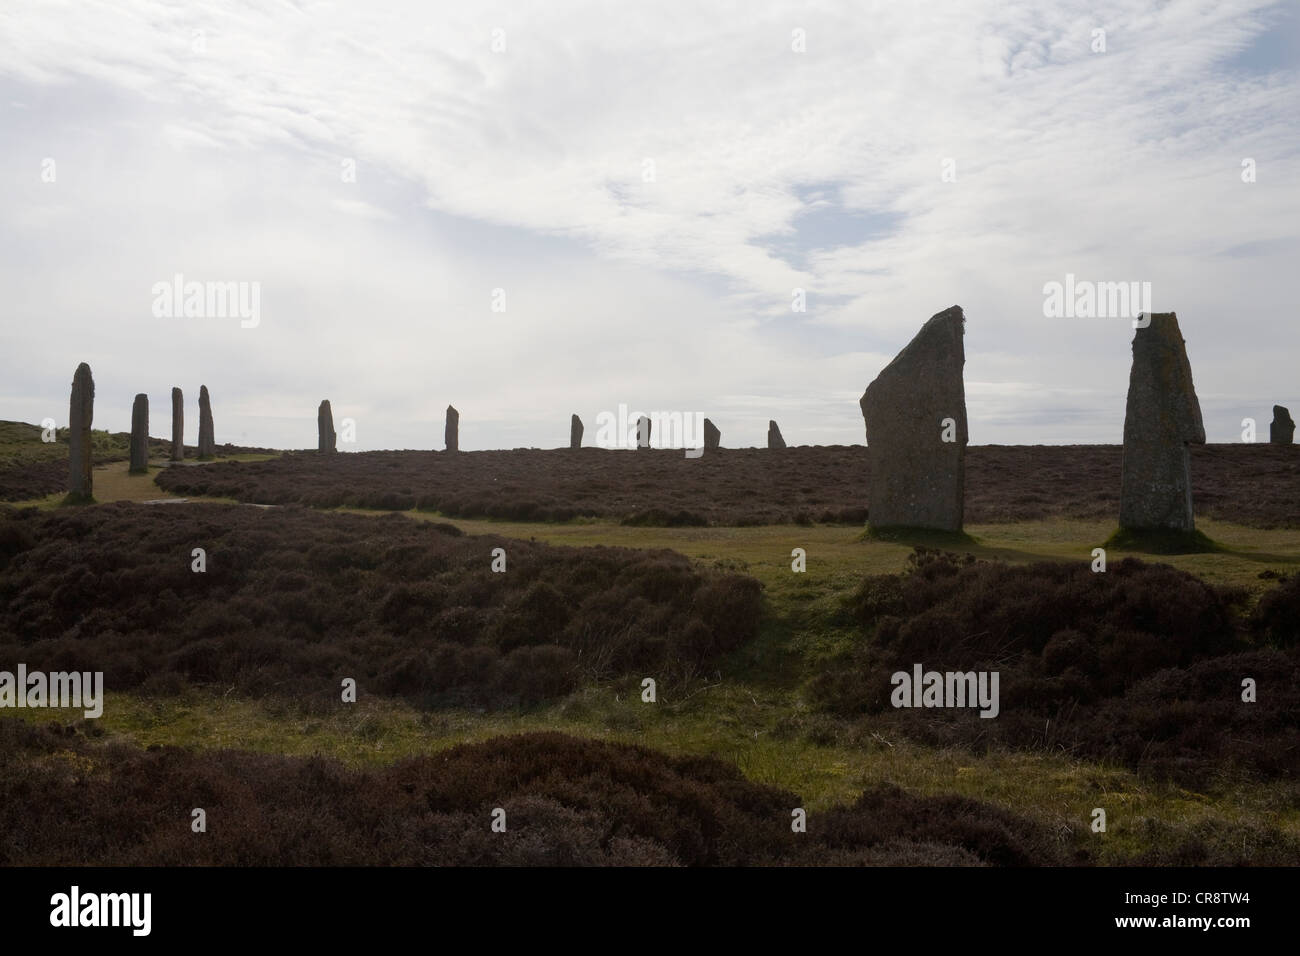 Orkney Stenness Loch Ecosse Royaume-uni continentale de l'ouest de l'anneau de cercle de pierre henge néolithique Shetlands silhouetté contre le ciel clair Banque D'Images